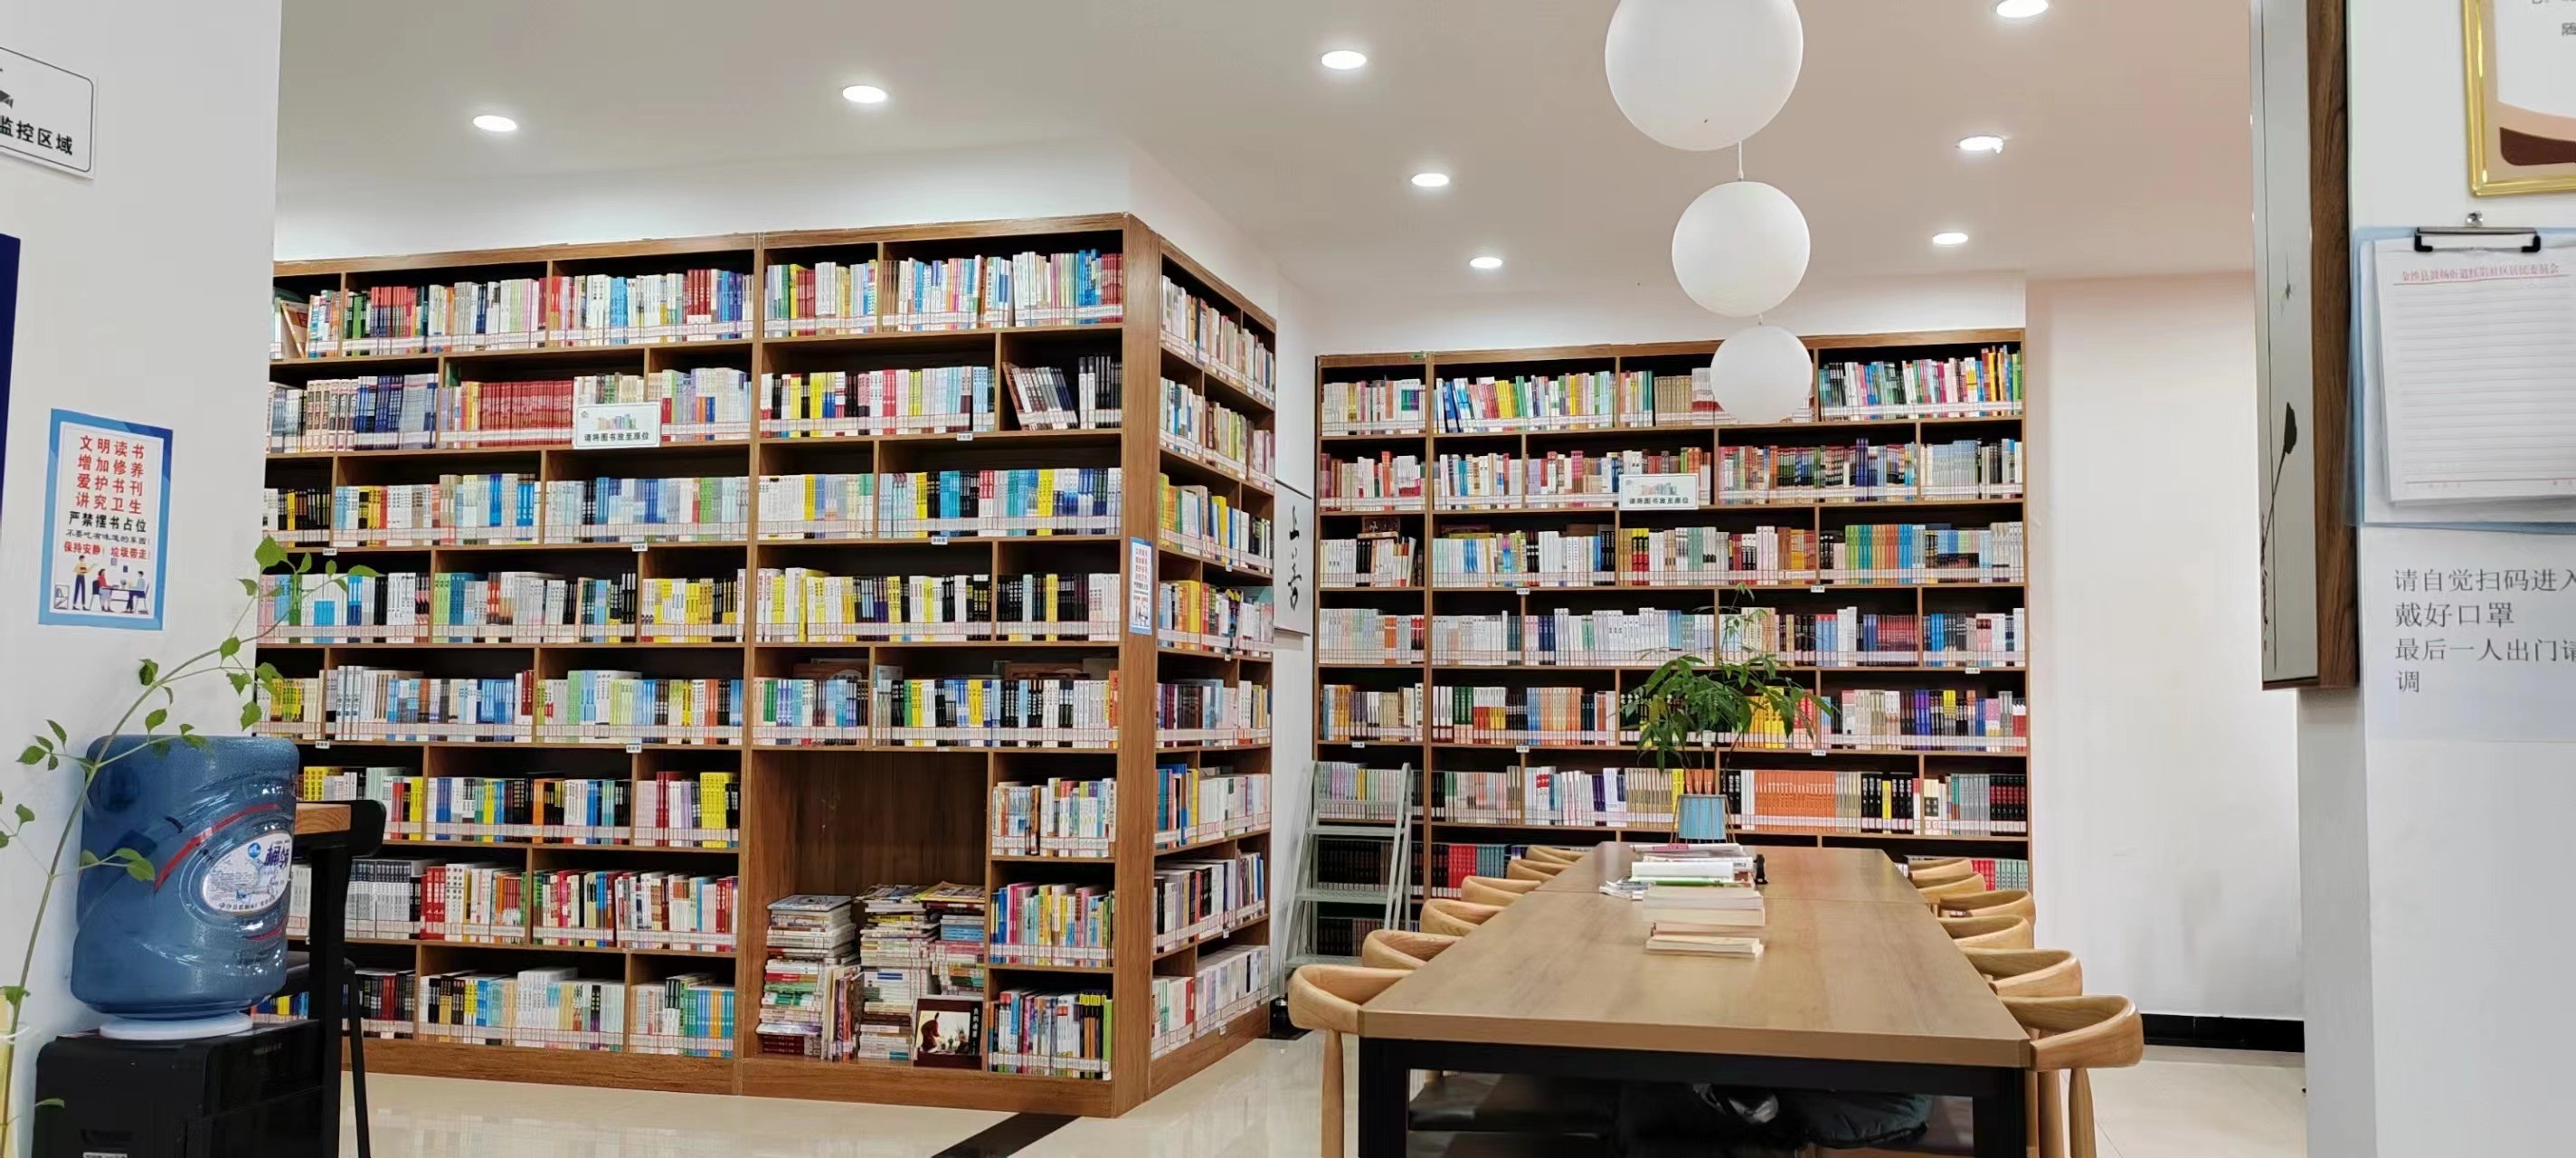 金沙县鼓场街道红岩社区农家书屋获得“贵州省最美书屋”称号-2